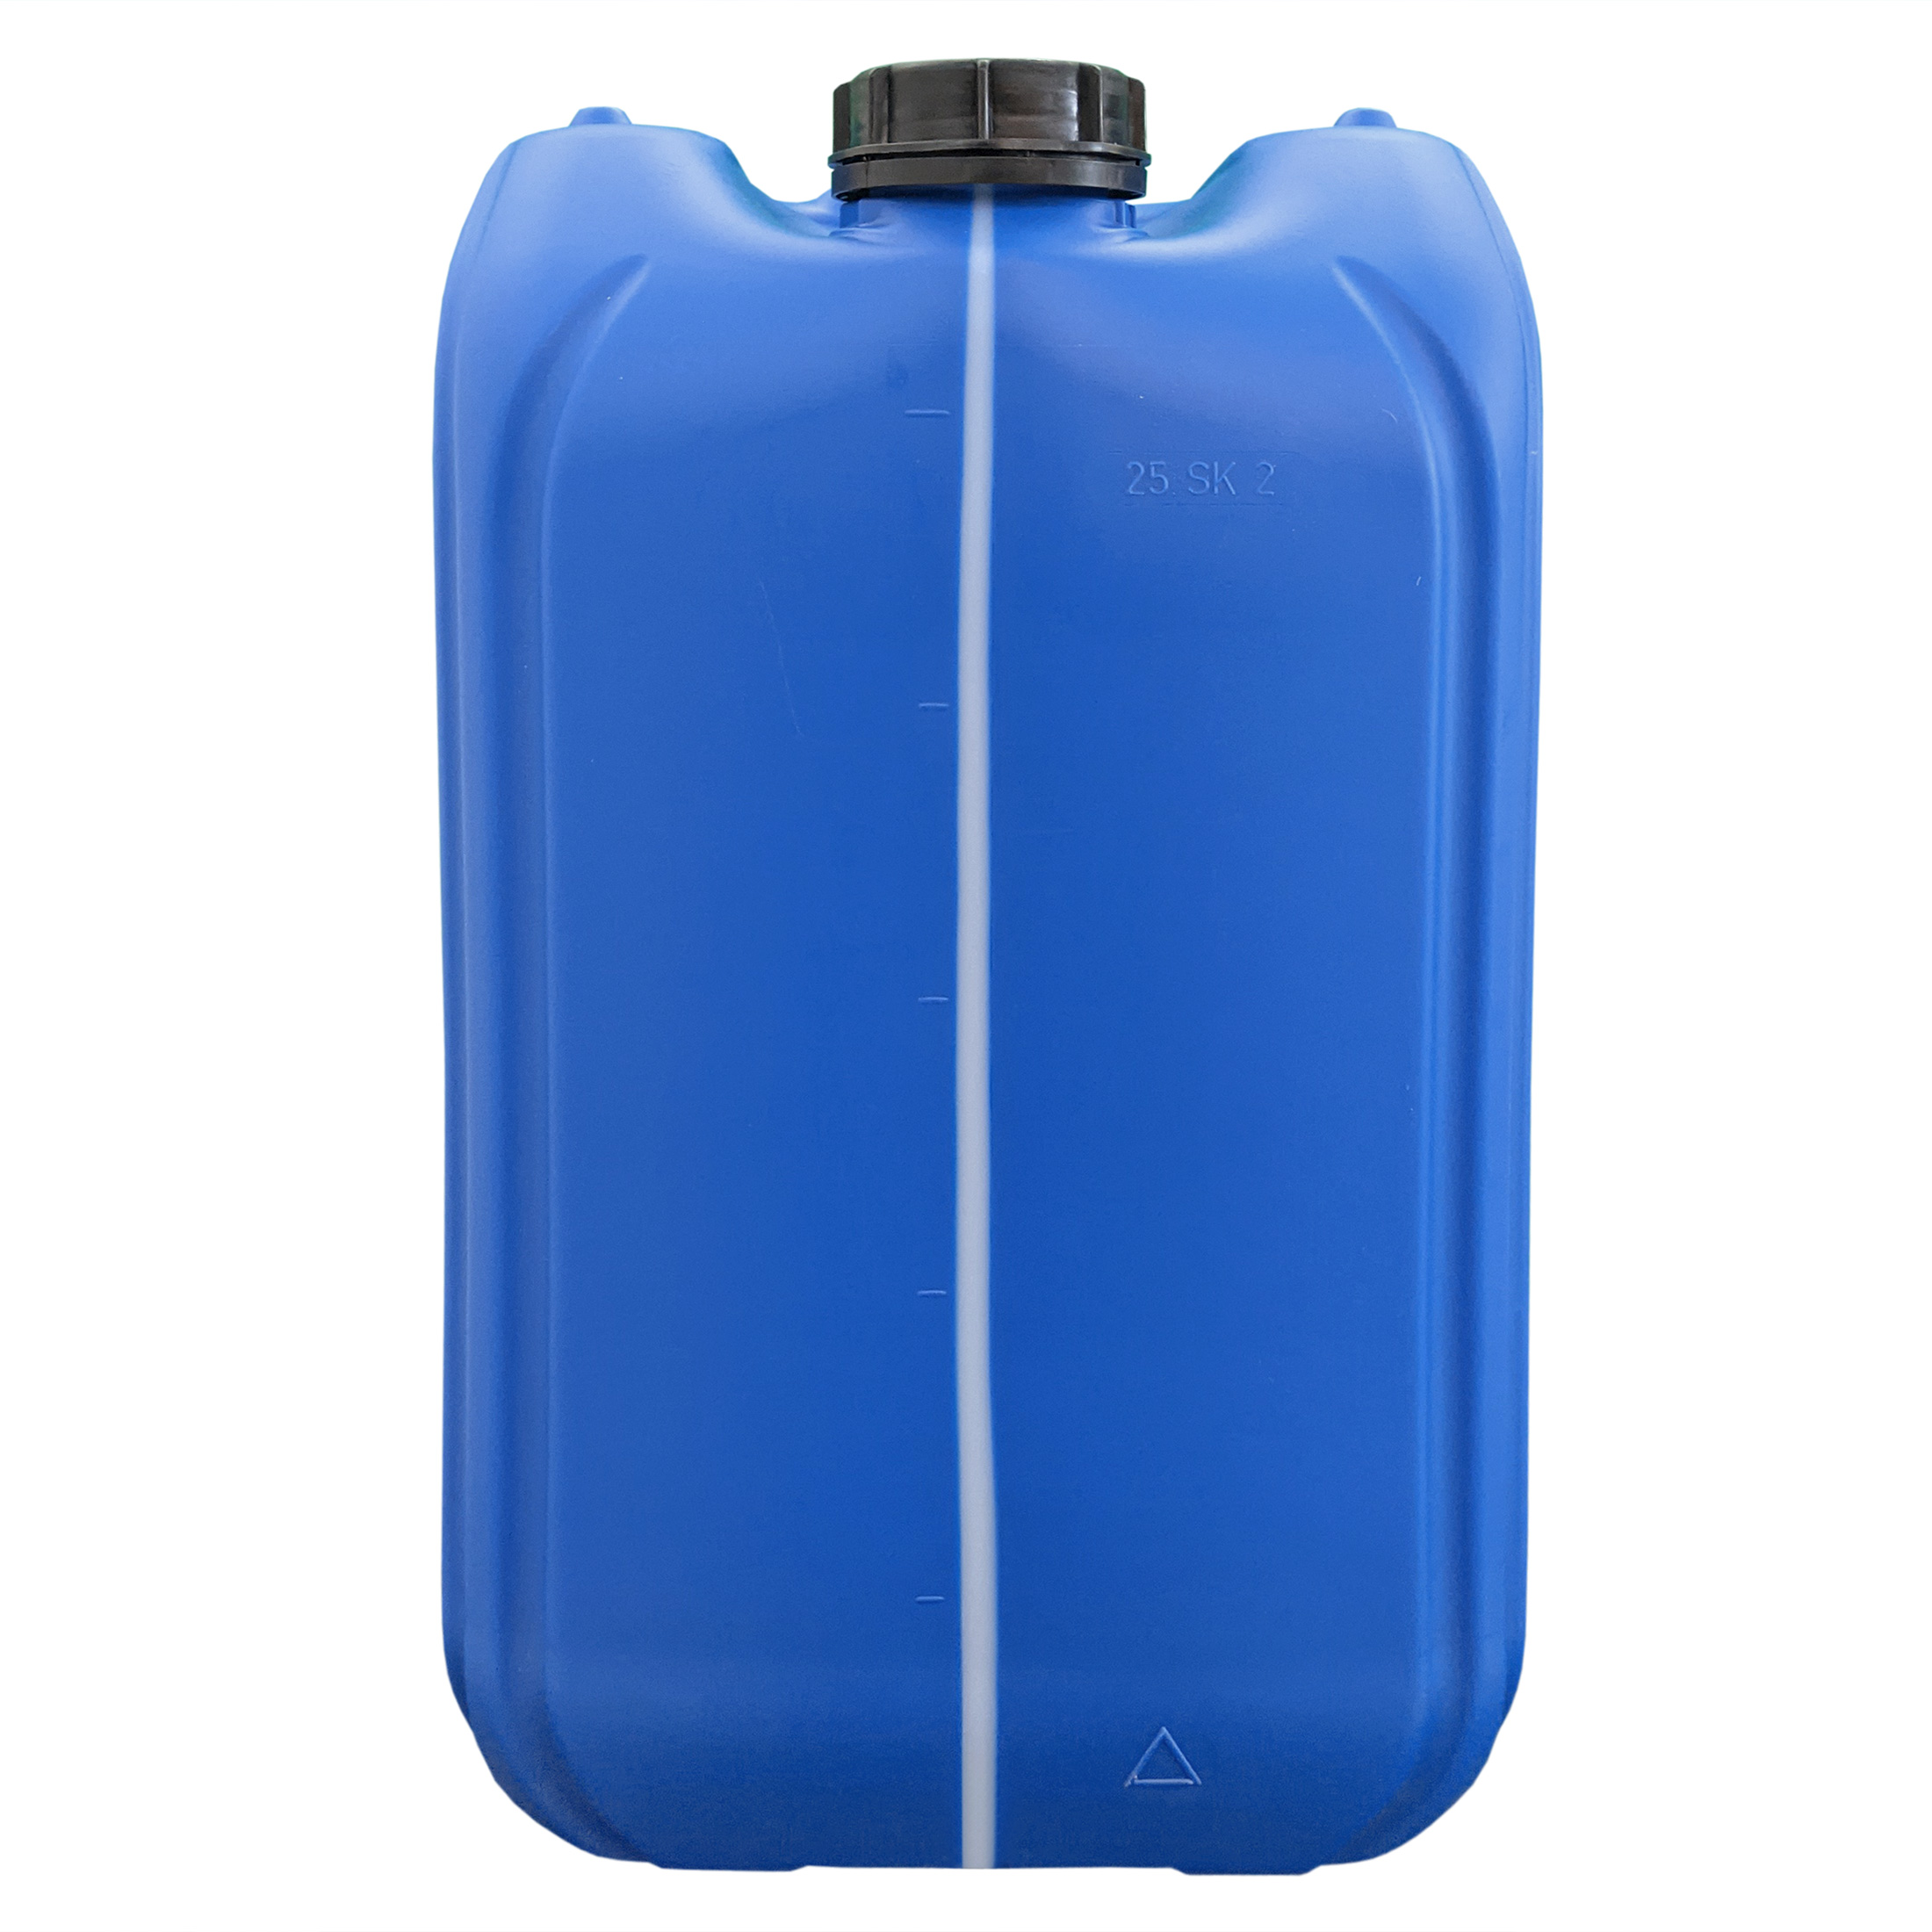 Bidon en plastique bleu 25 litres UN empilable avec bouchon à vis GL 51  blanc